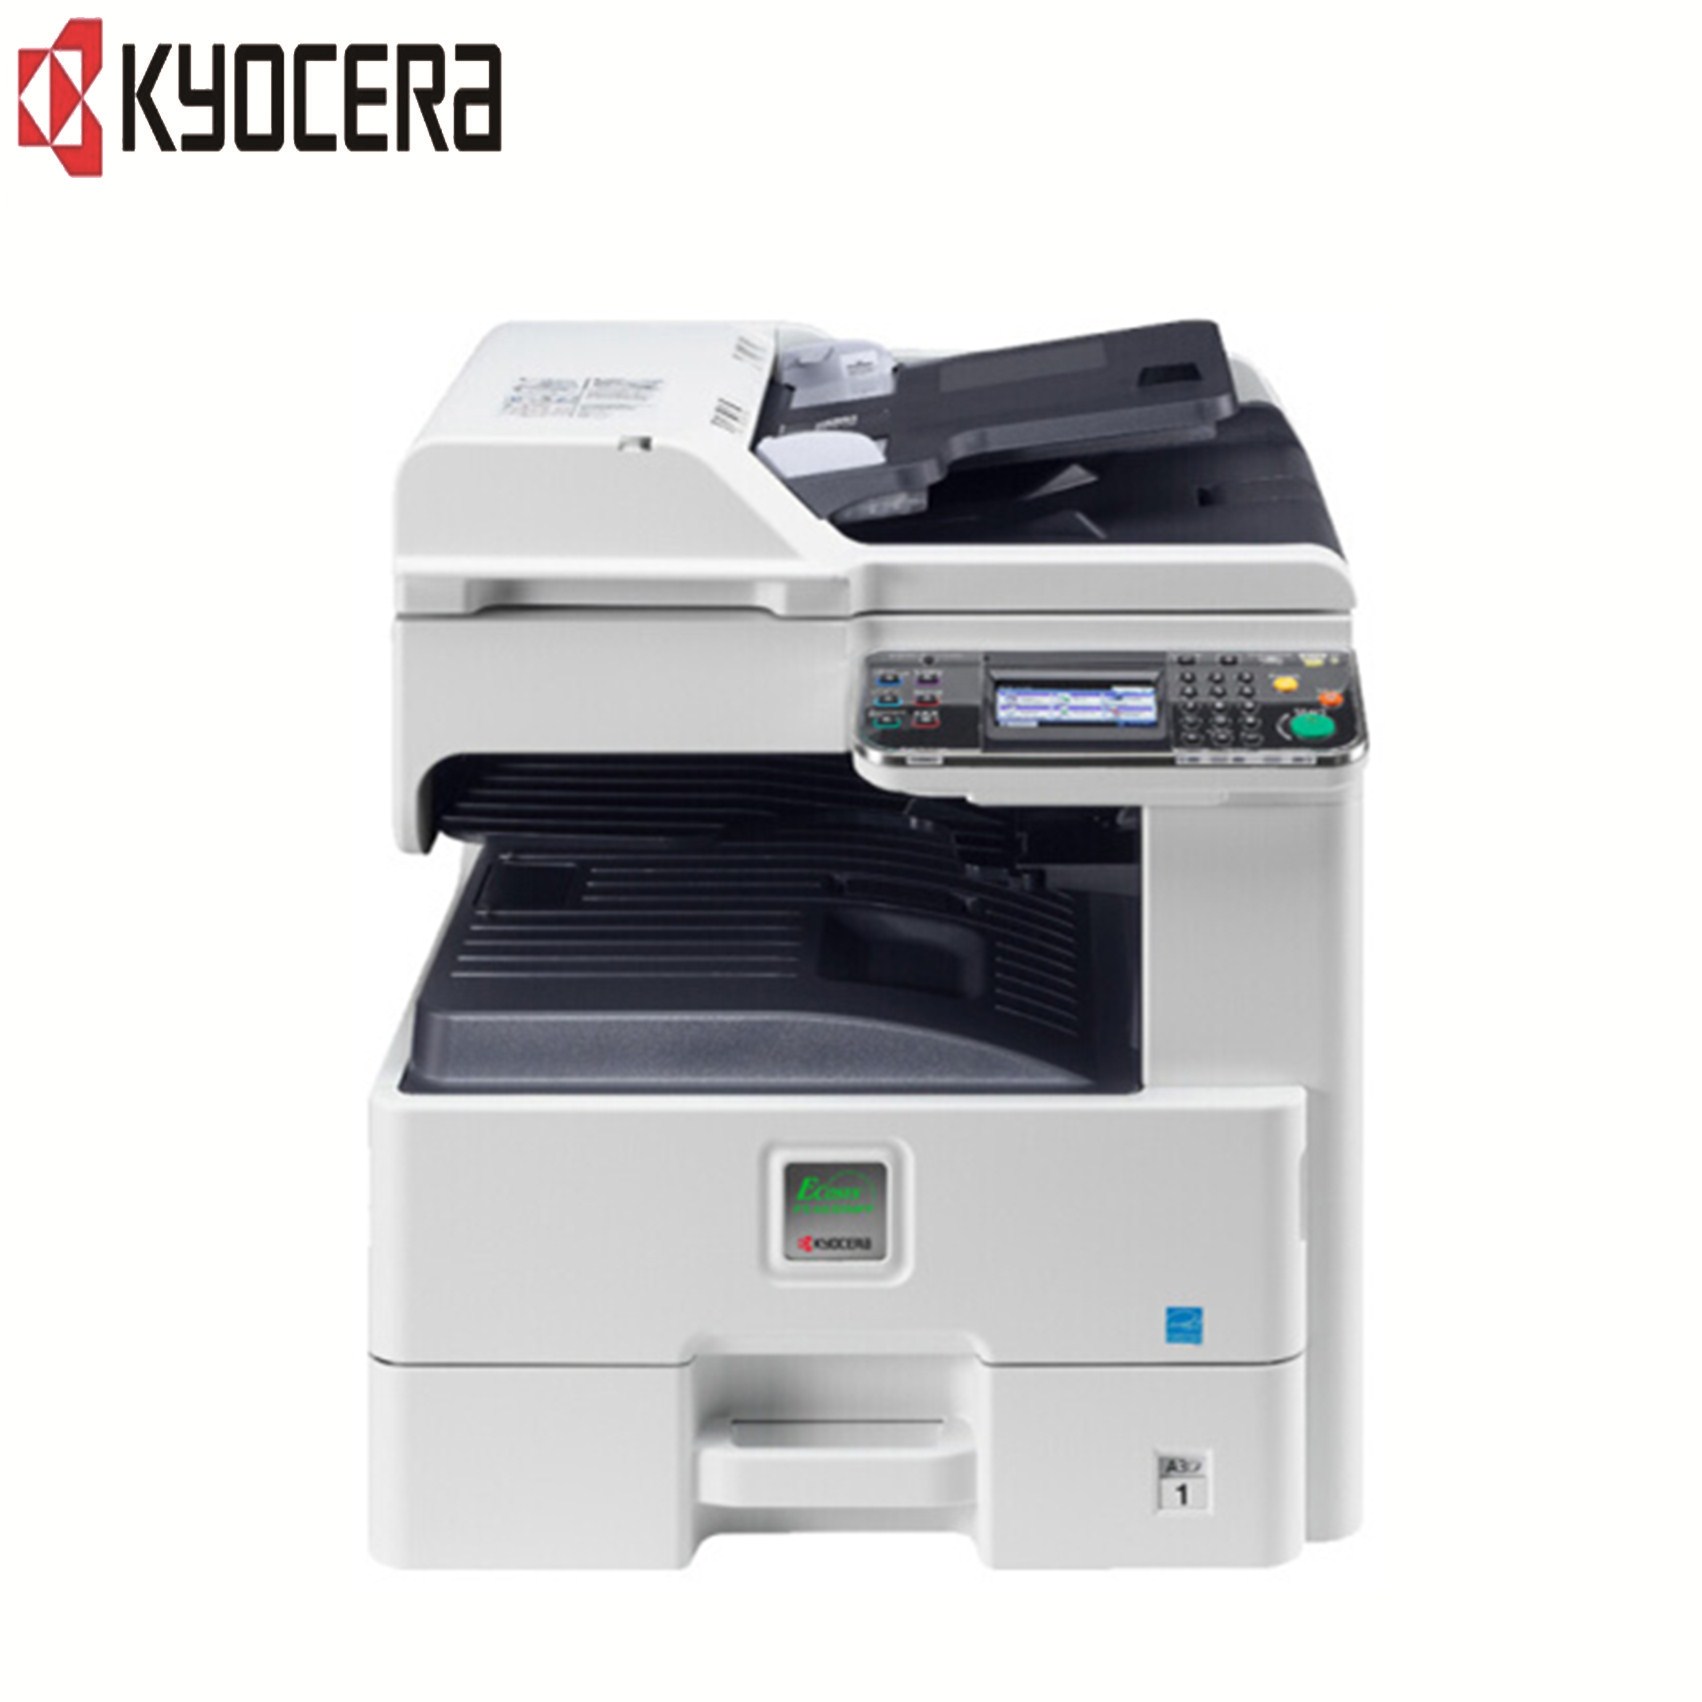 京瓷(KYOCERA)FS-6530MFP黑白数码复印机 (打印/复印/扫描)